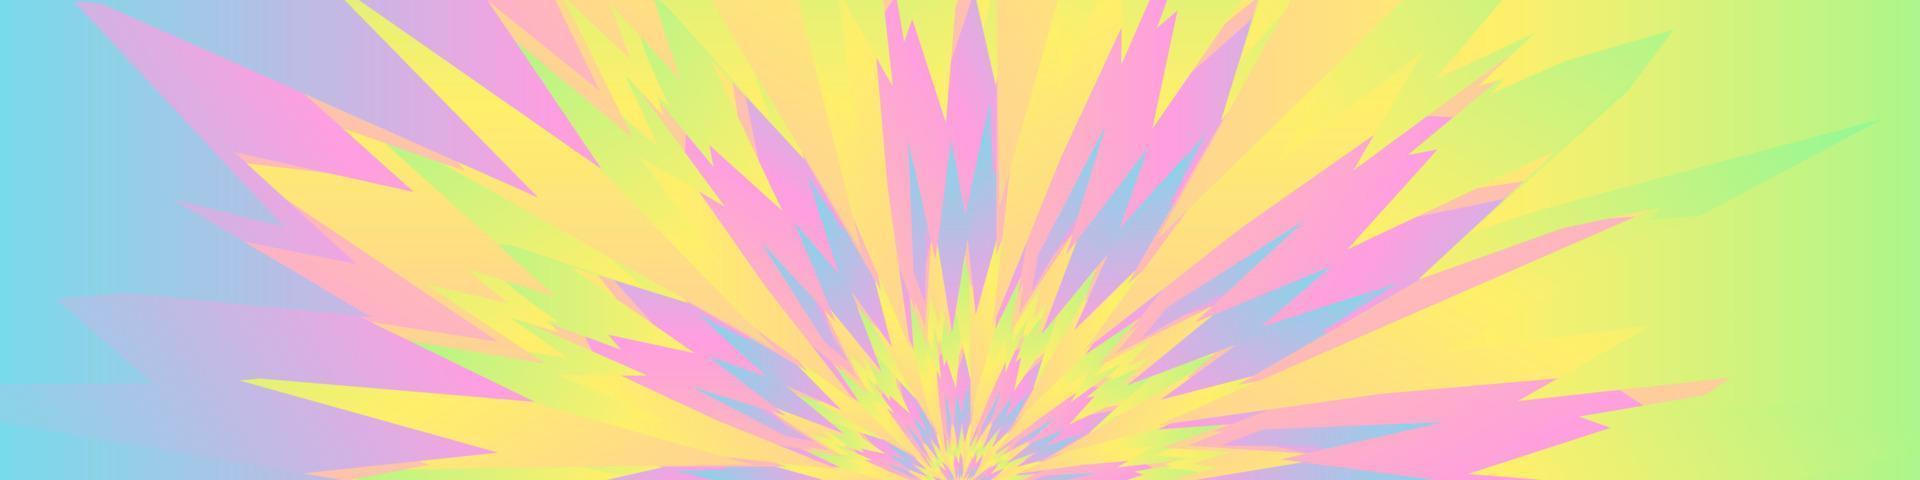 abstrakter Pastellstrudelhintergrund. Tie-Dye-Muster. Vektor-Illustration vektor